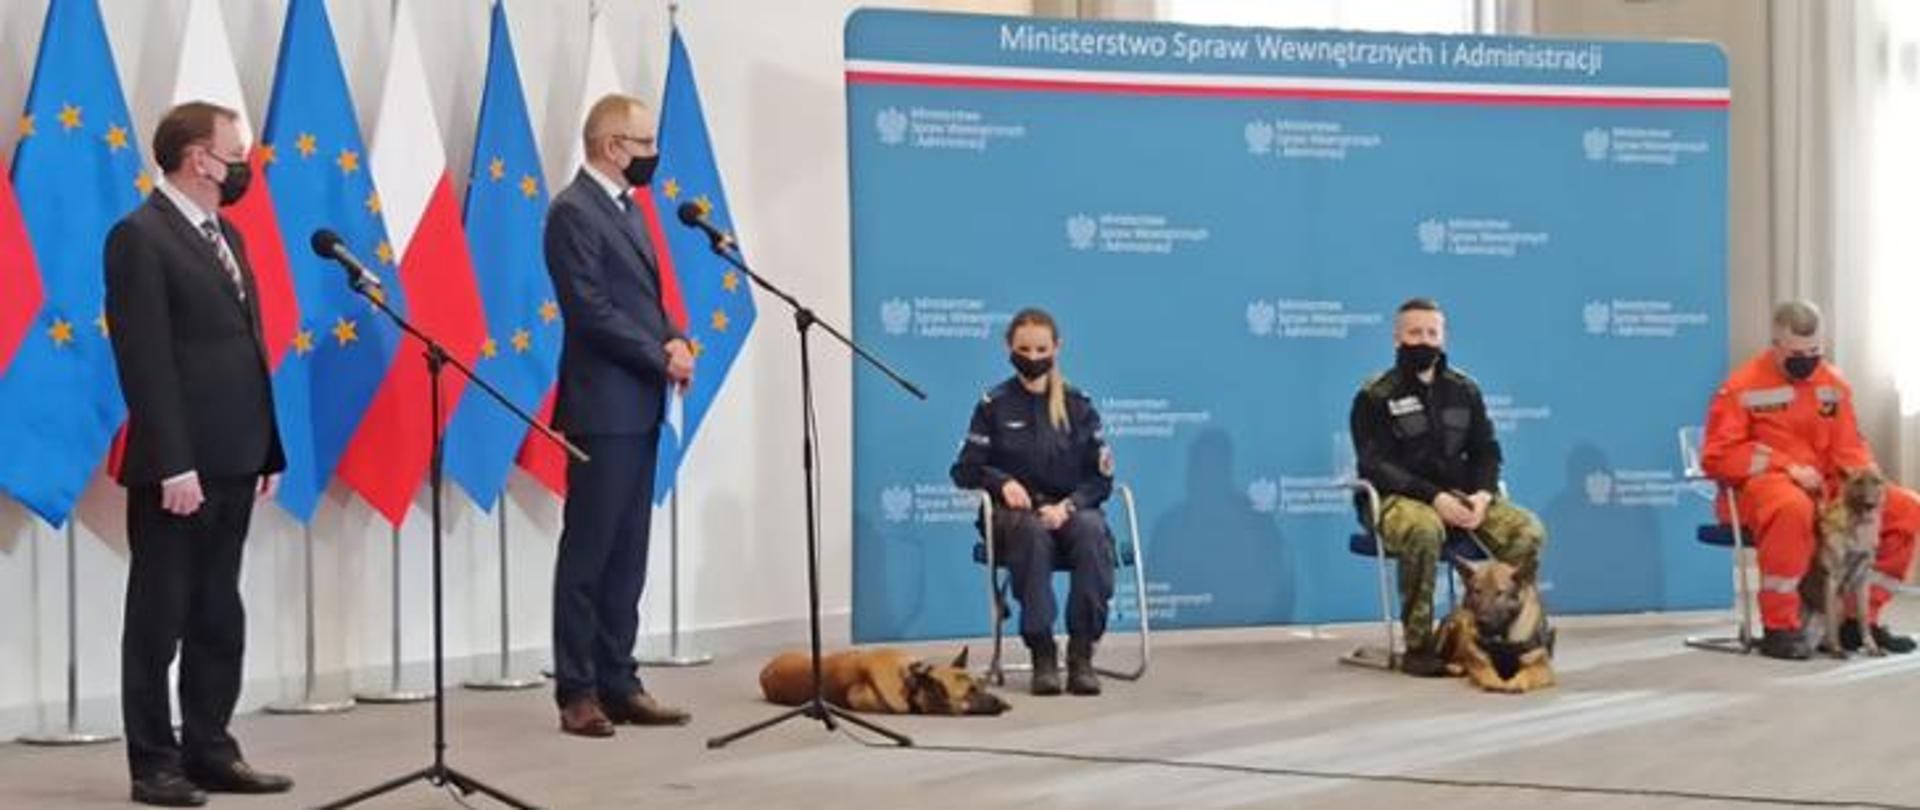 Z lewej strony kierownictwa MSWIA a z prawej funkcjonariusze przewodnicy wraz ze swoimi psami